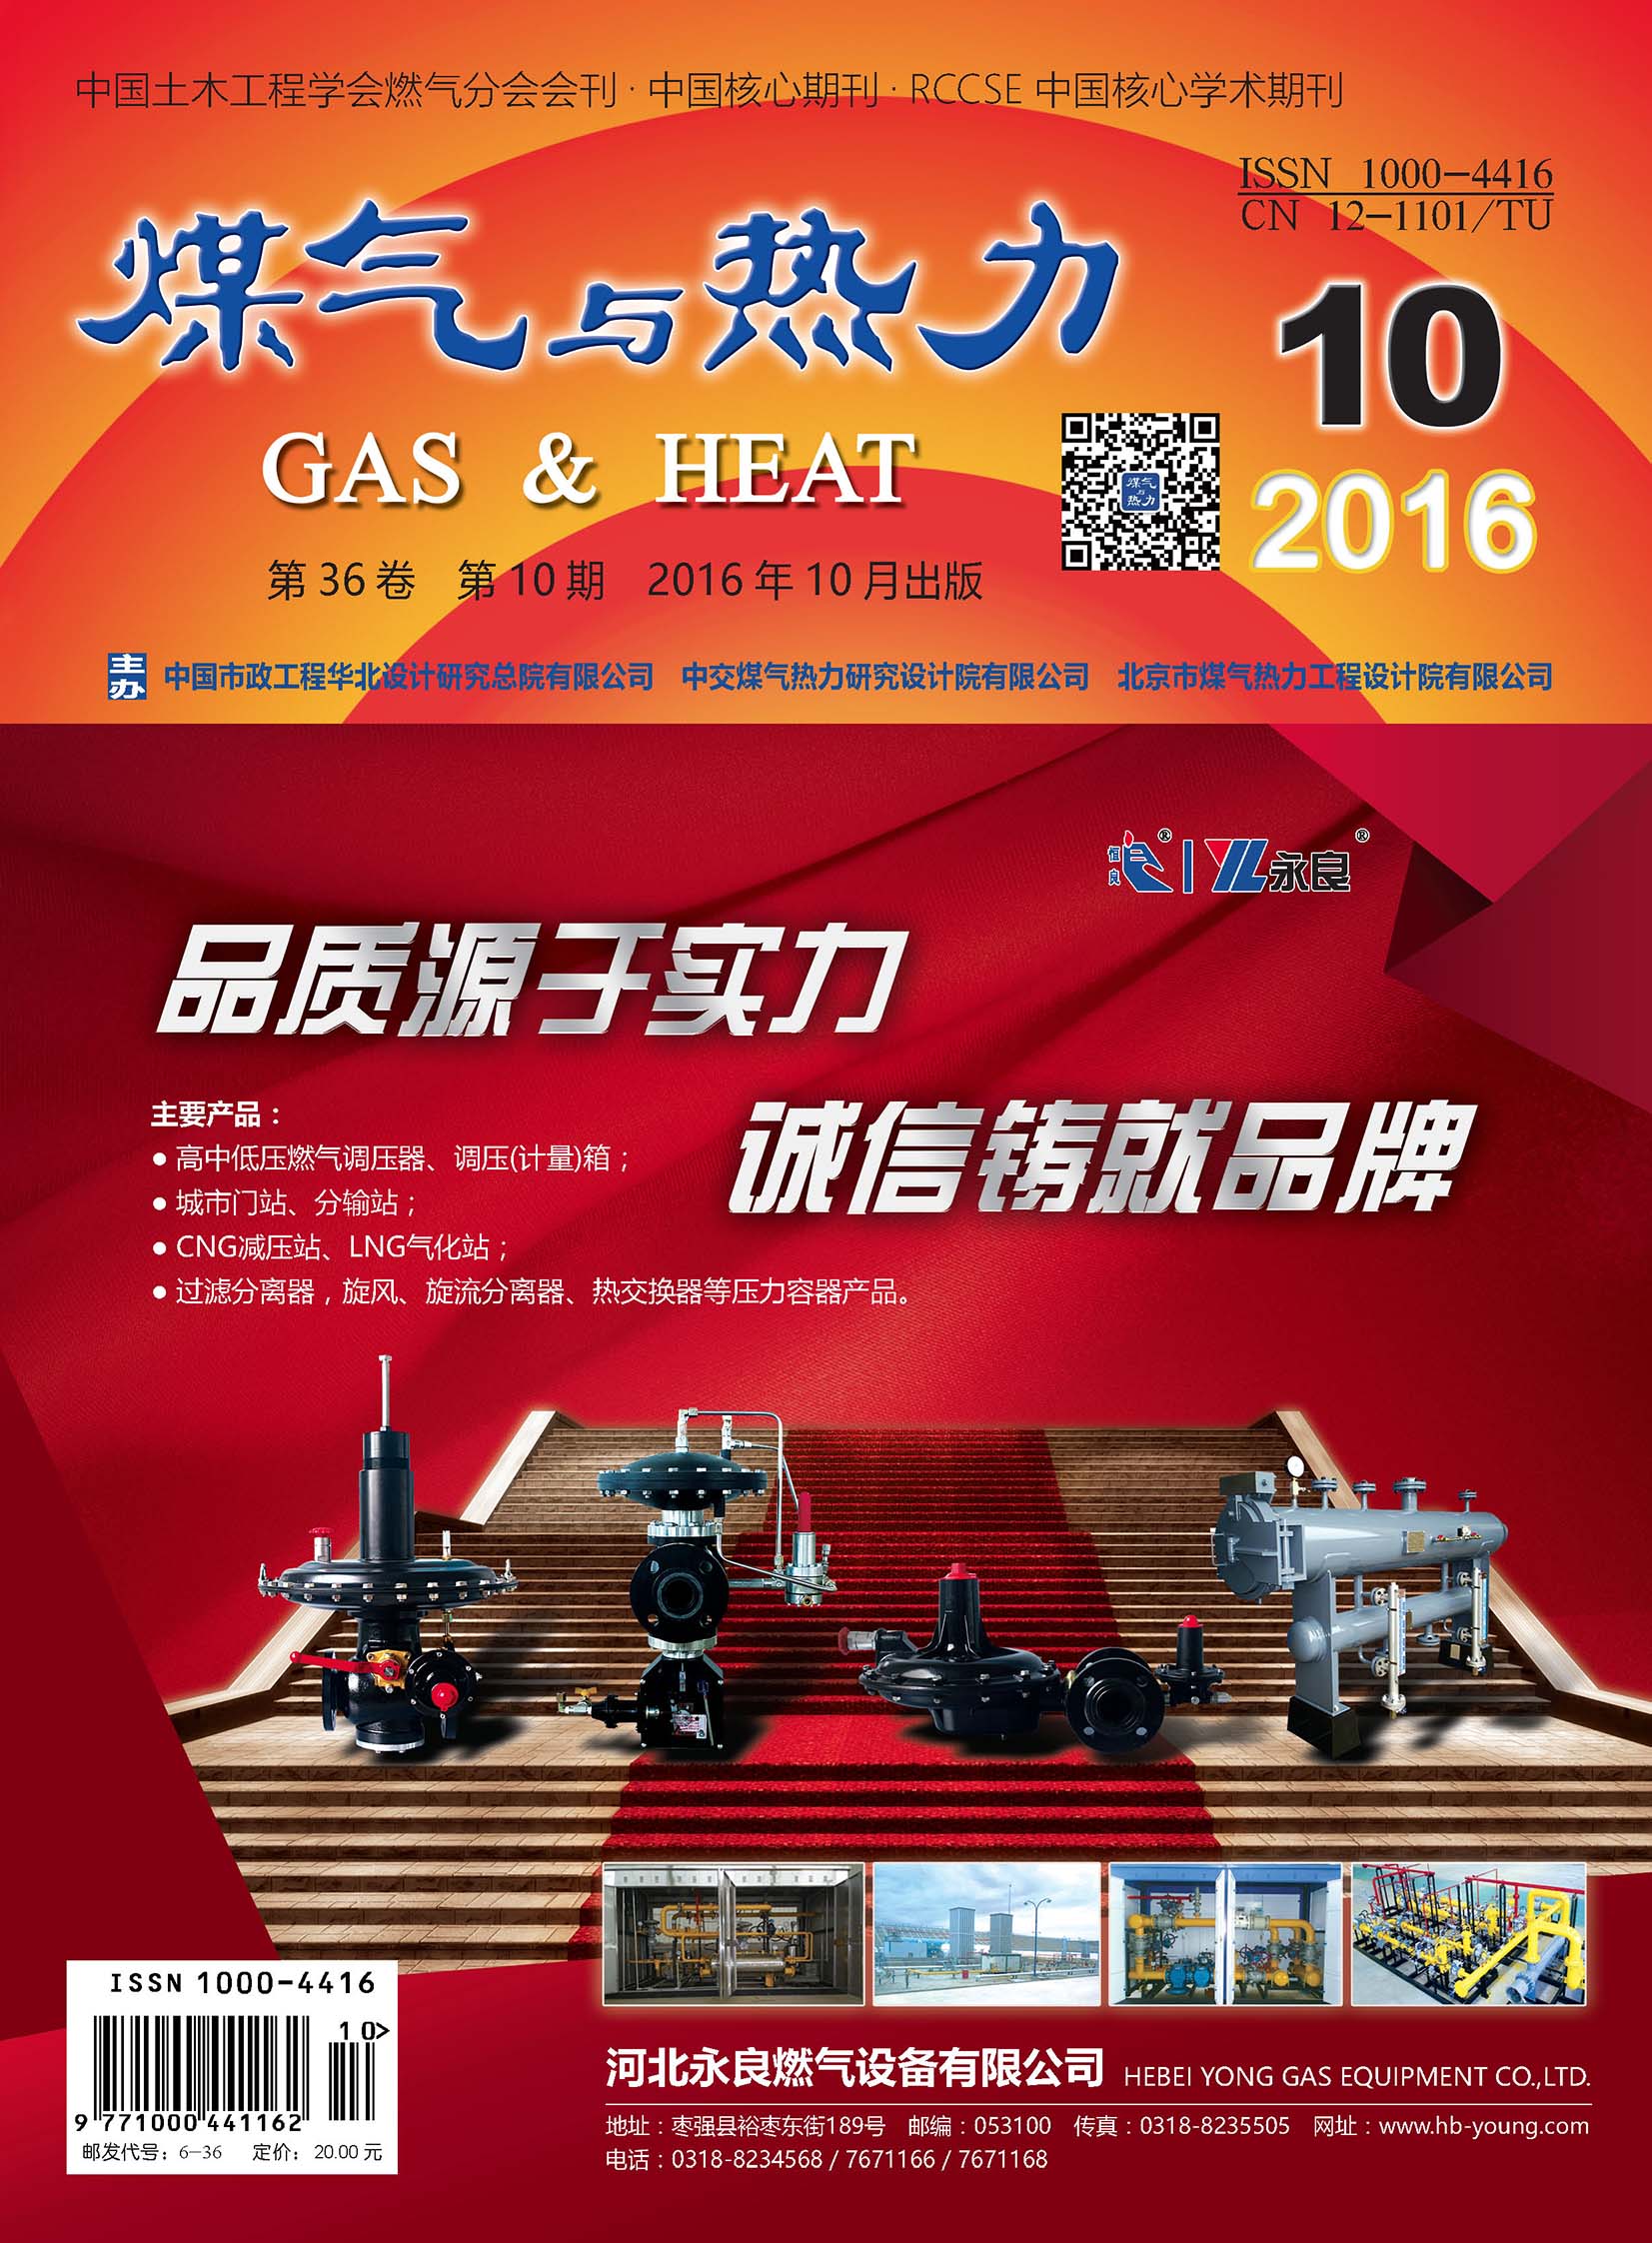 《煤气与热力》2016年10月刊